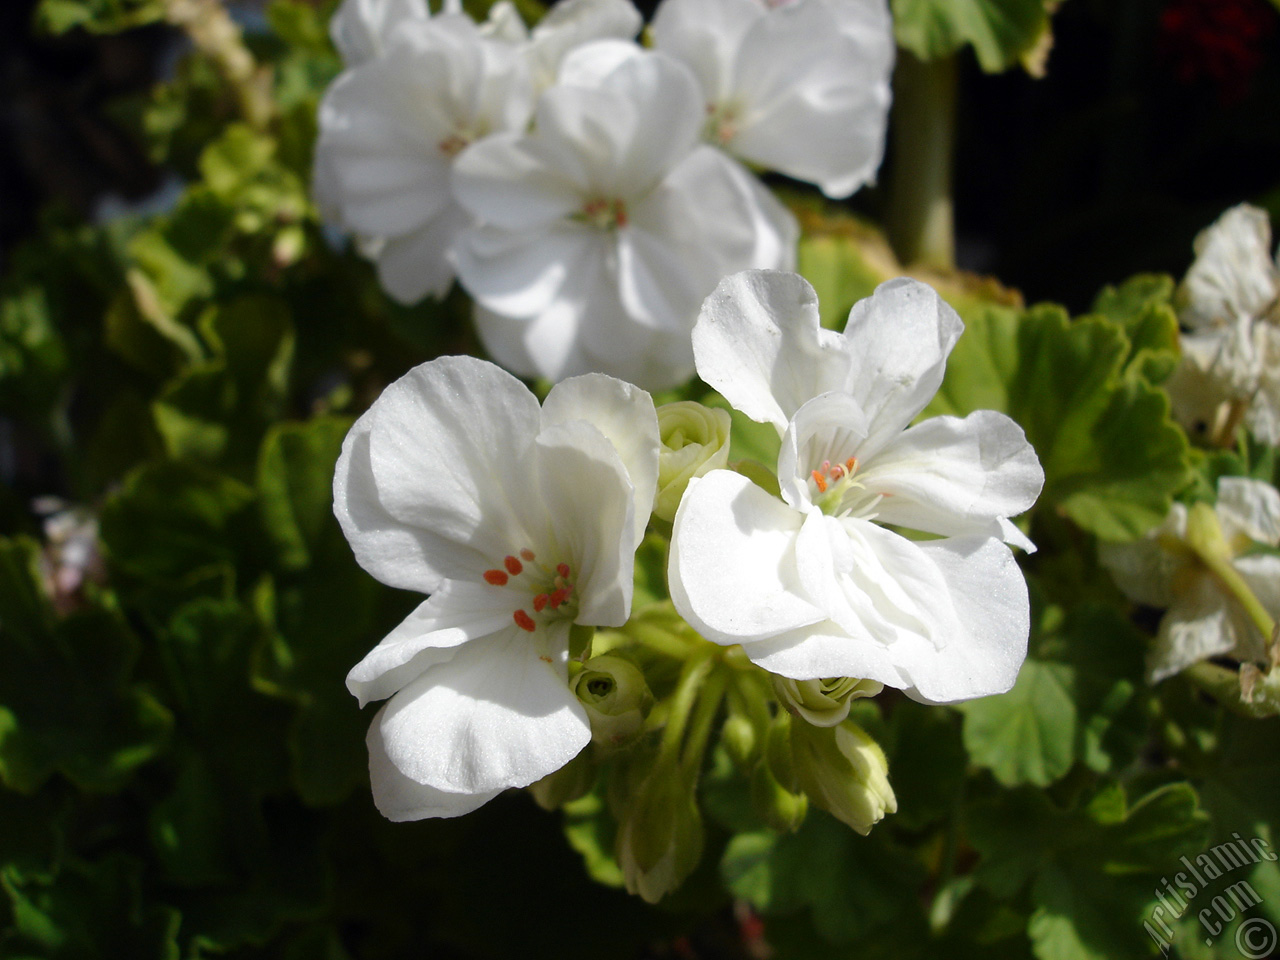 White color Pelargonia -Geranium- flower.
